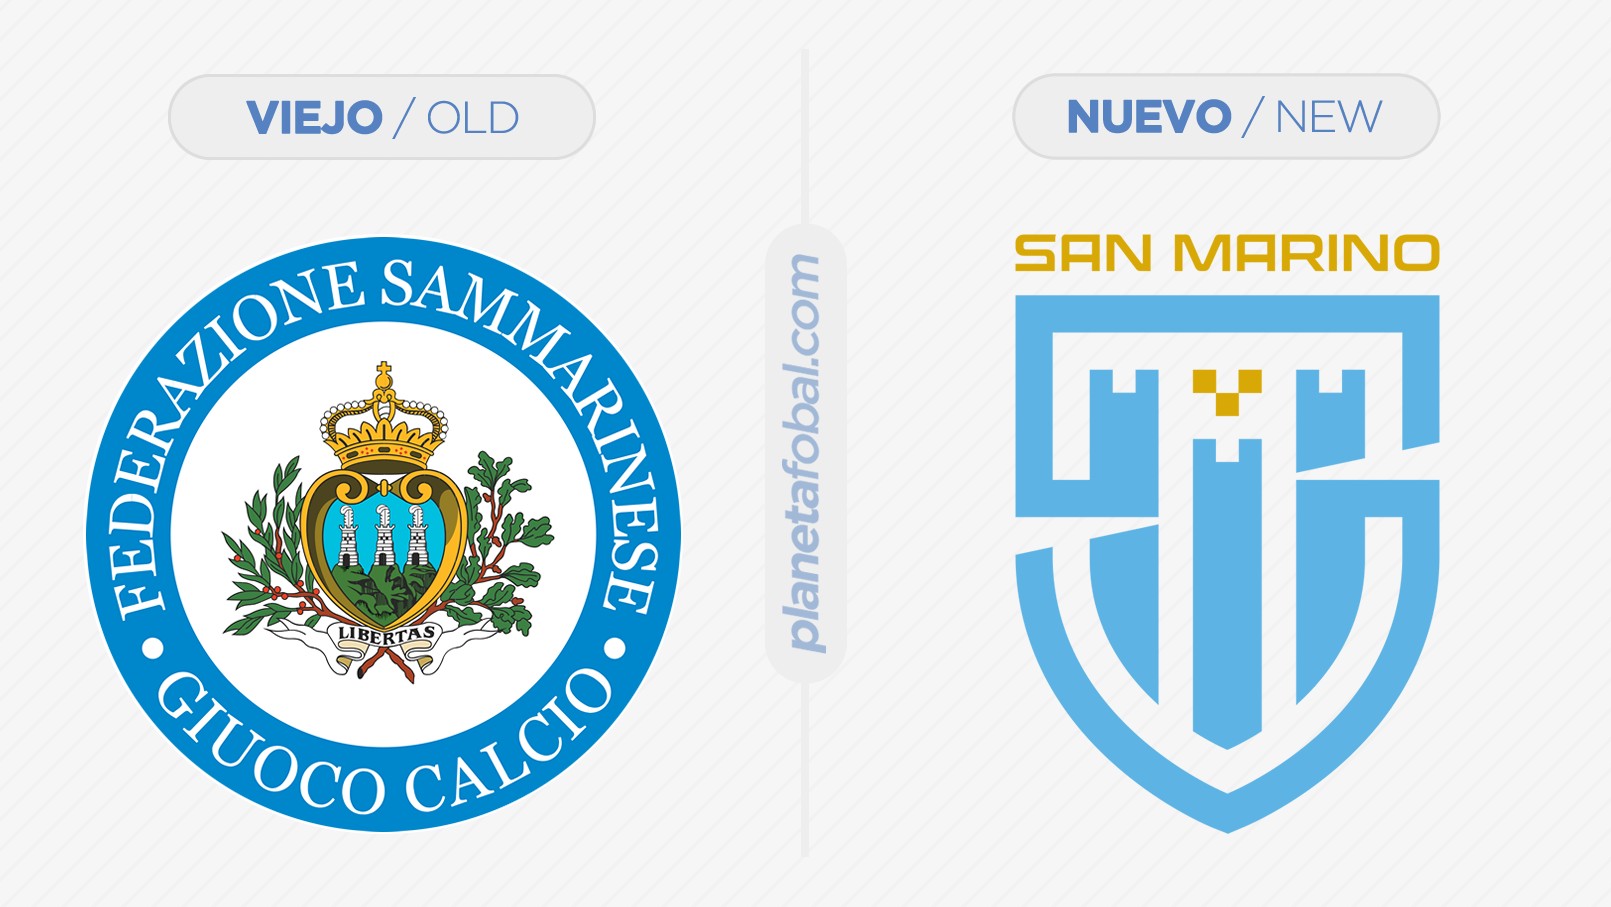 La selección de San Marino presenta su nuevo escudo